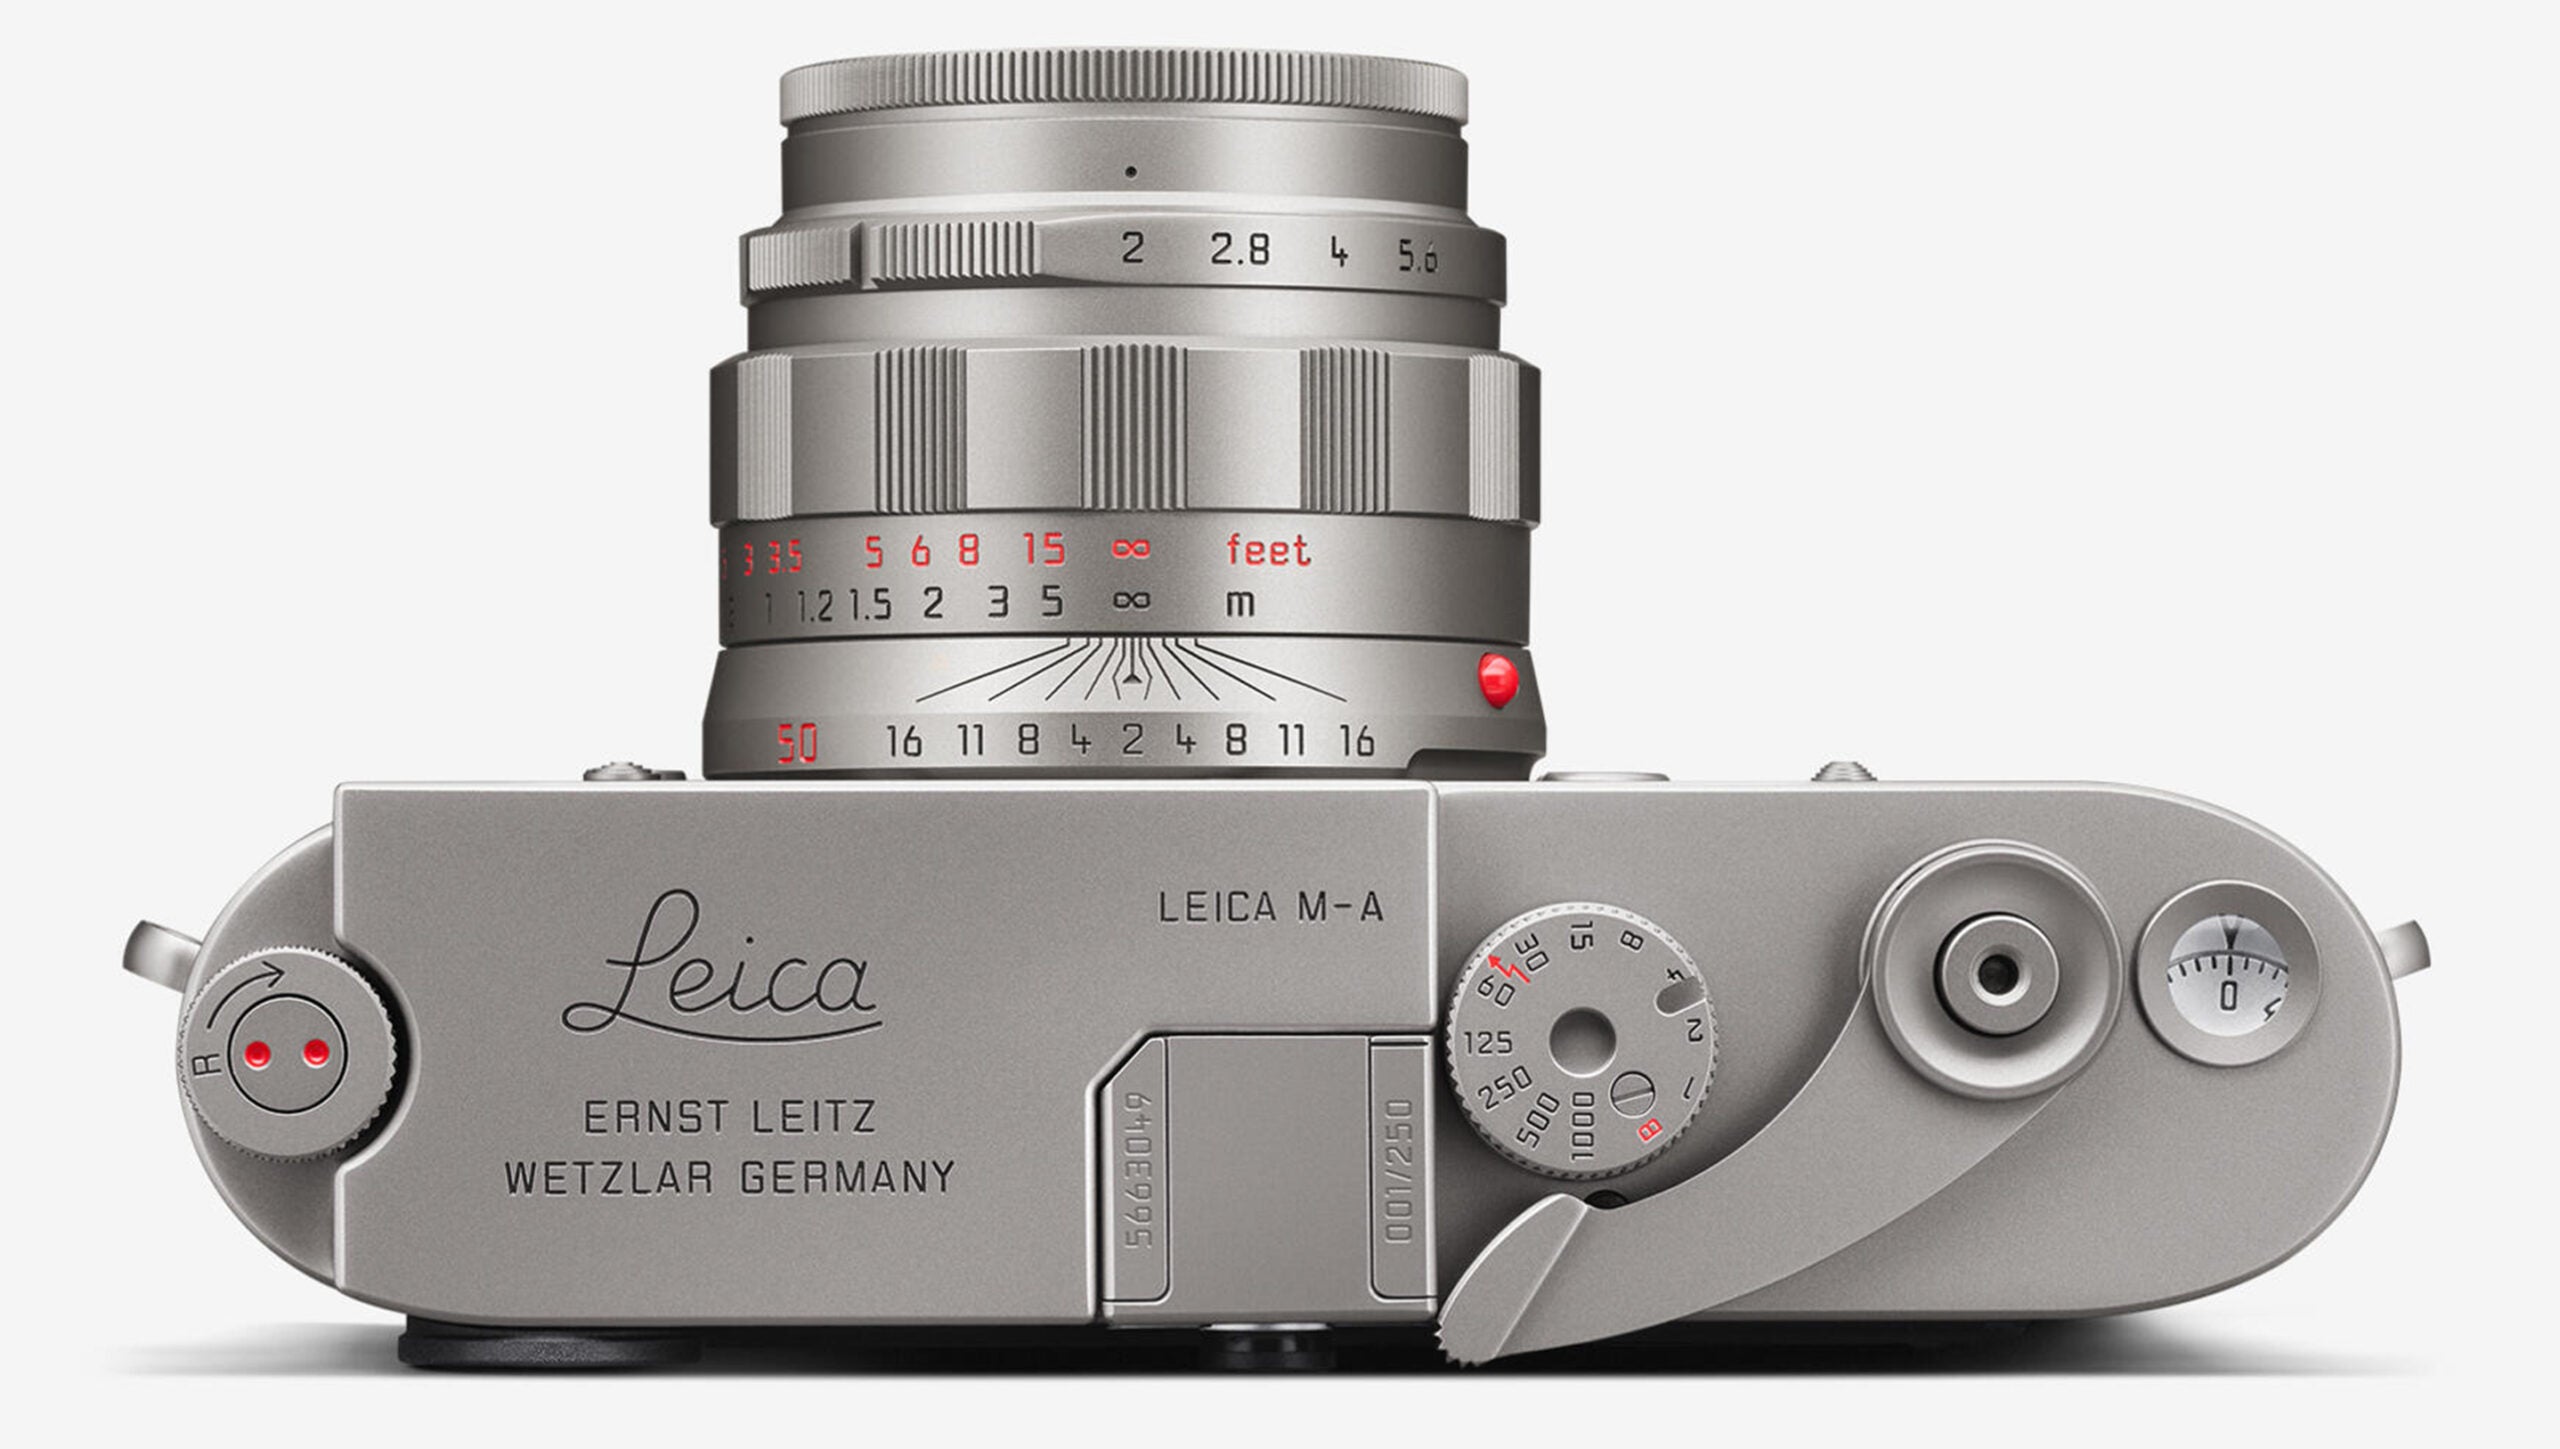 The Leica M-A Titan